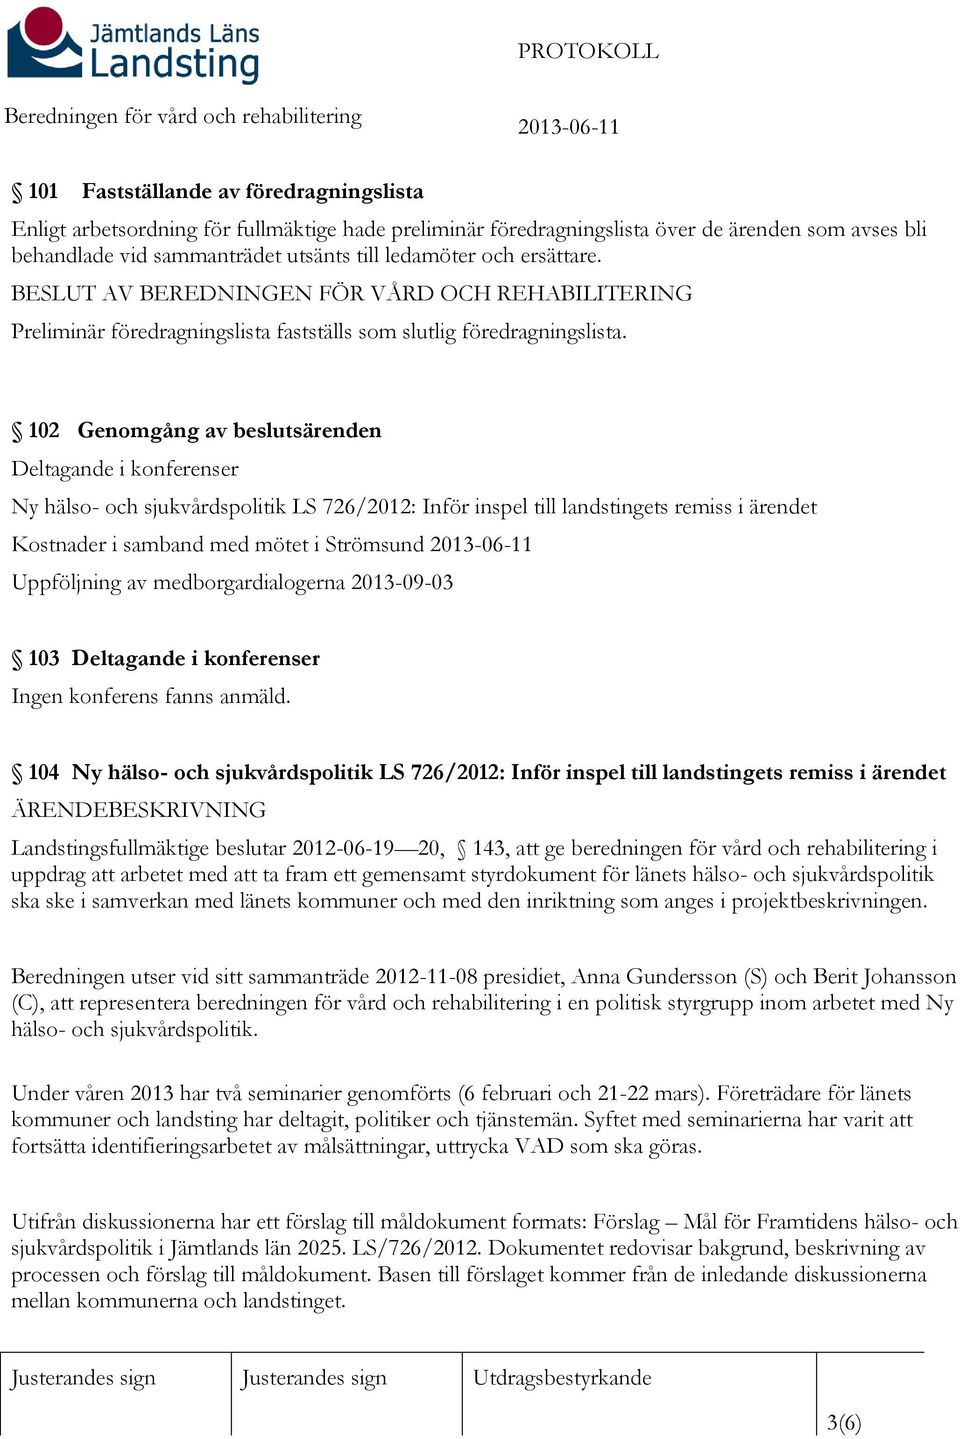 102 Genomgång av beslutsärenden Deltagande i konferenser Ny hälso- och sjukvårdspolitik LS 726/2012: Inför inspel till landstingets remiss i ärendet Kostnader i samband med mötet i Strömsund